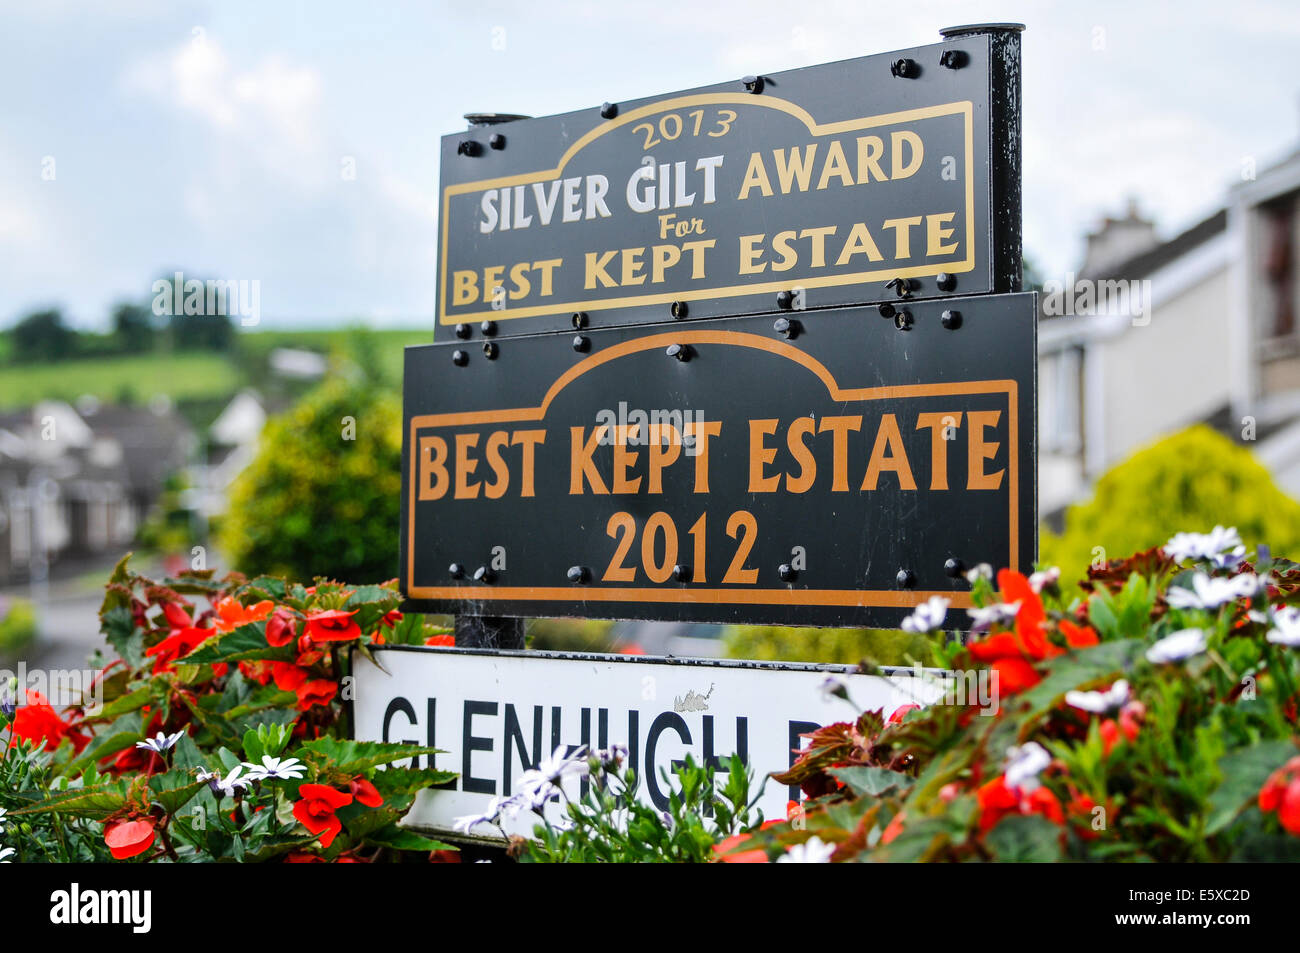 Ballymena, Irlande du Nord. 7 Aug 2014 - signe pour le 'Best Kept Estate 2012' et 'Silver Gilt Award pour Best Kept' Crédit : Stephen Barnes/Alamy Live News Banque D'Images